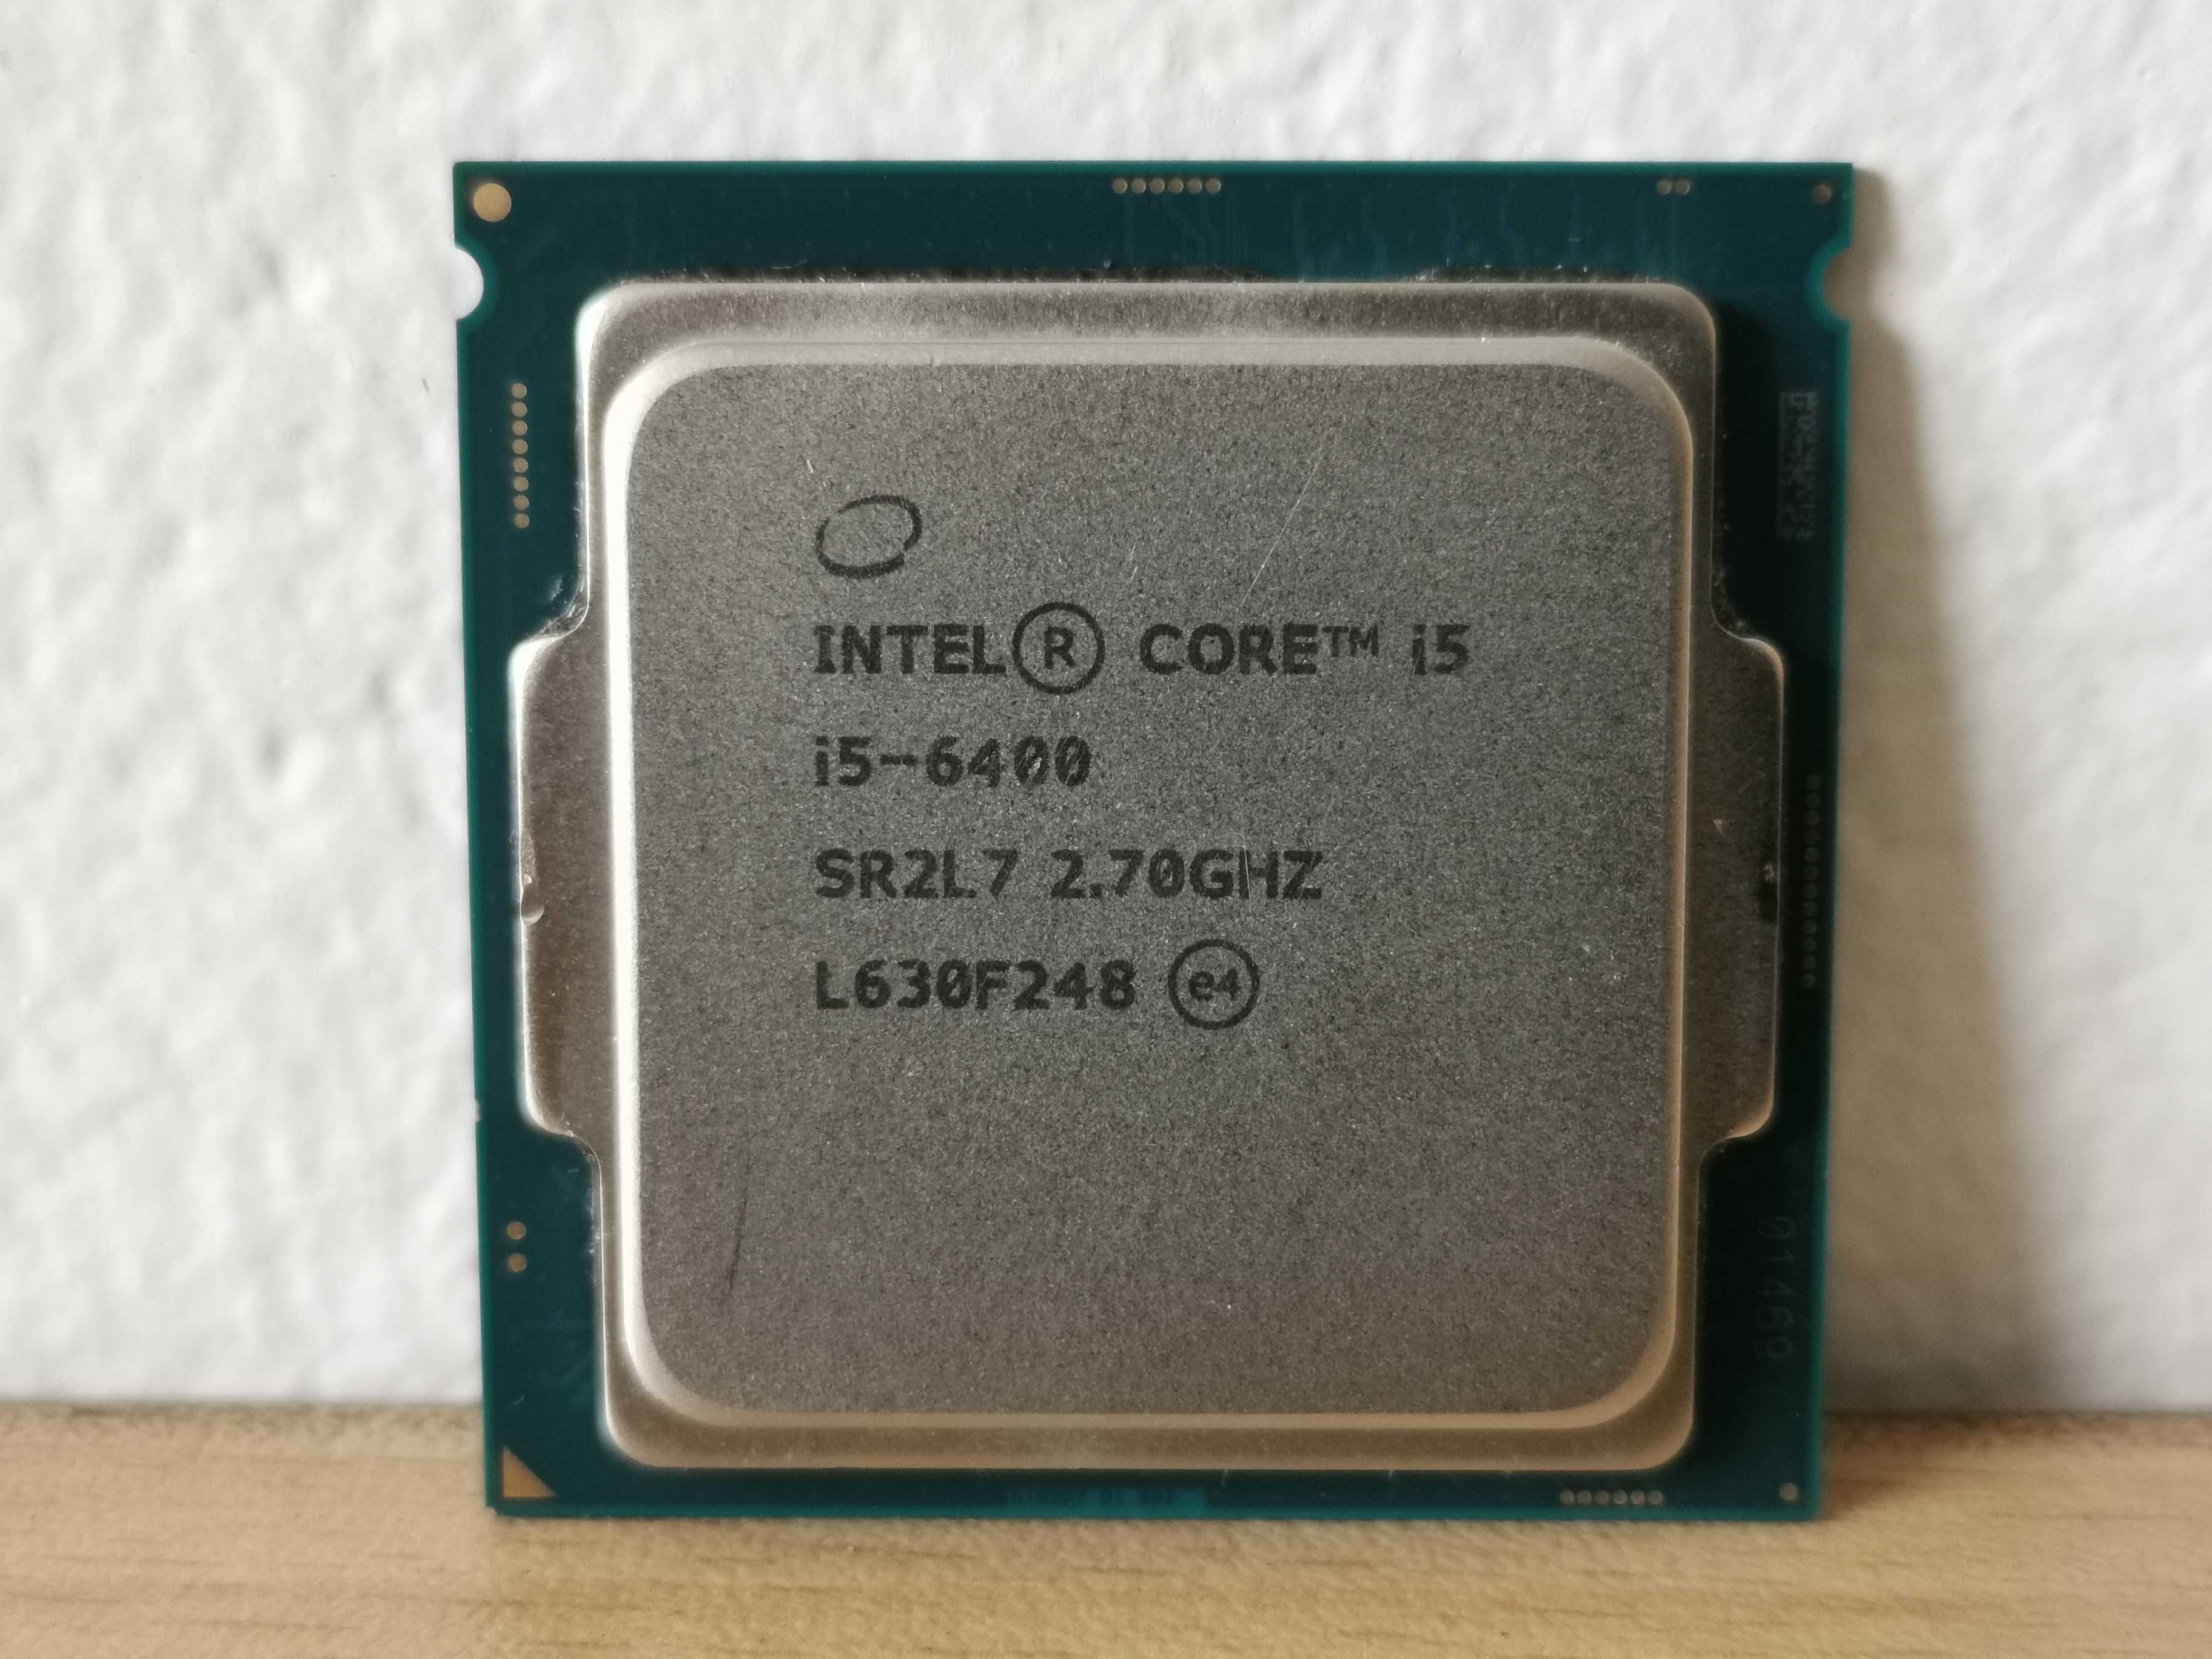 Процесор Intel i5-6400 до 3.30 GHz, socket 1151, Skylake